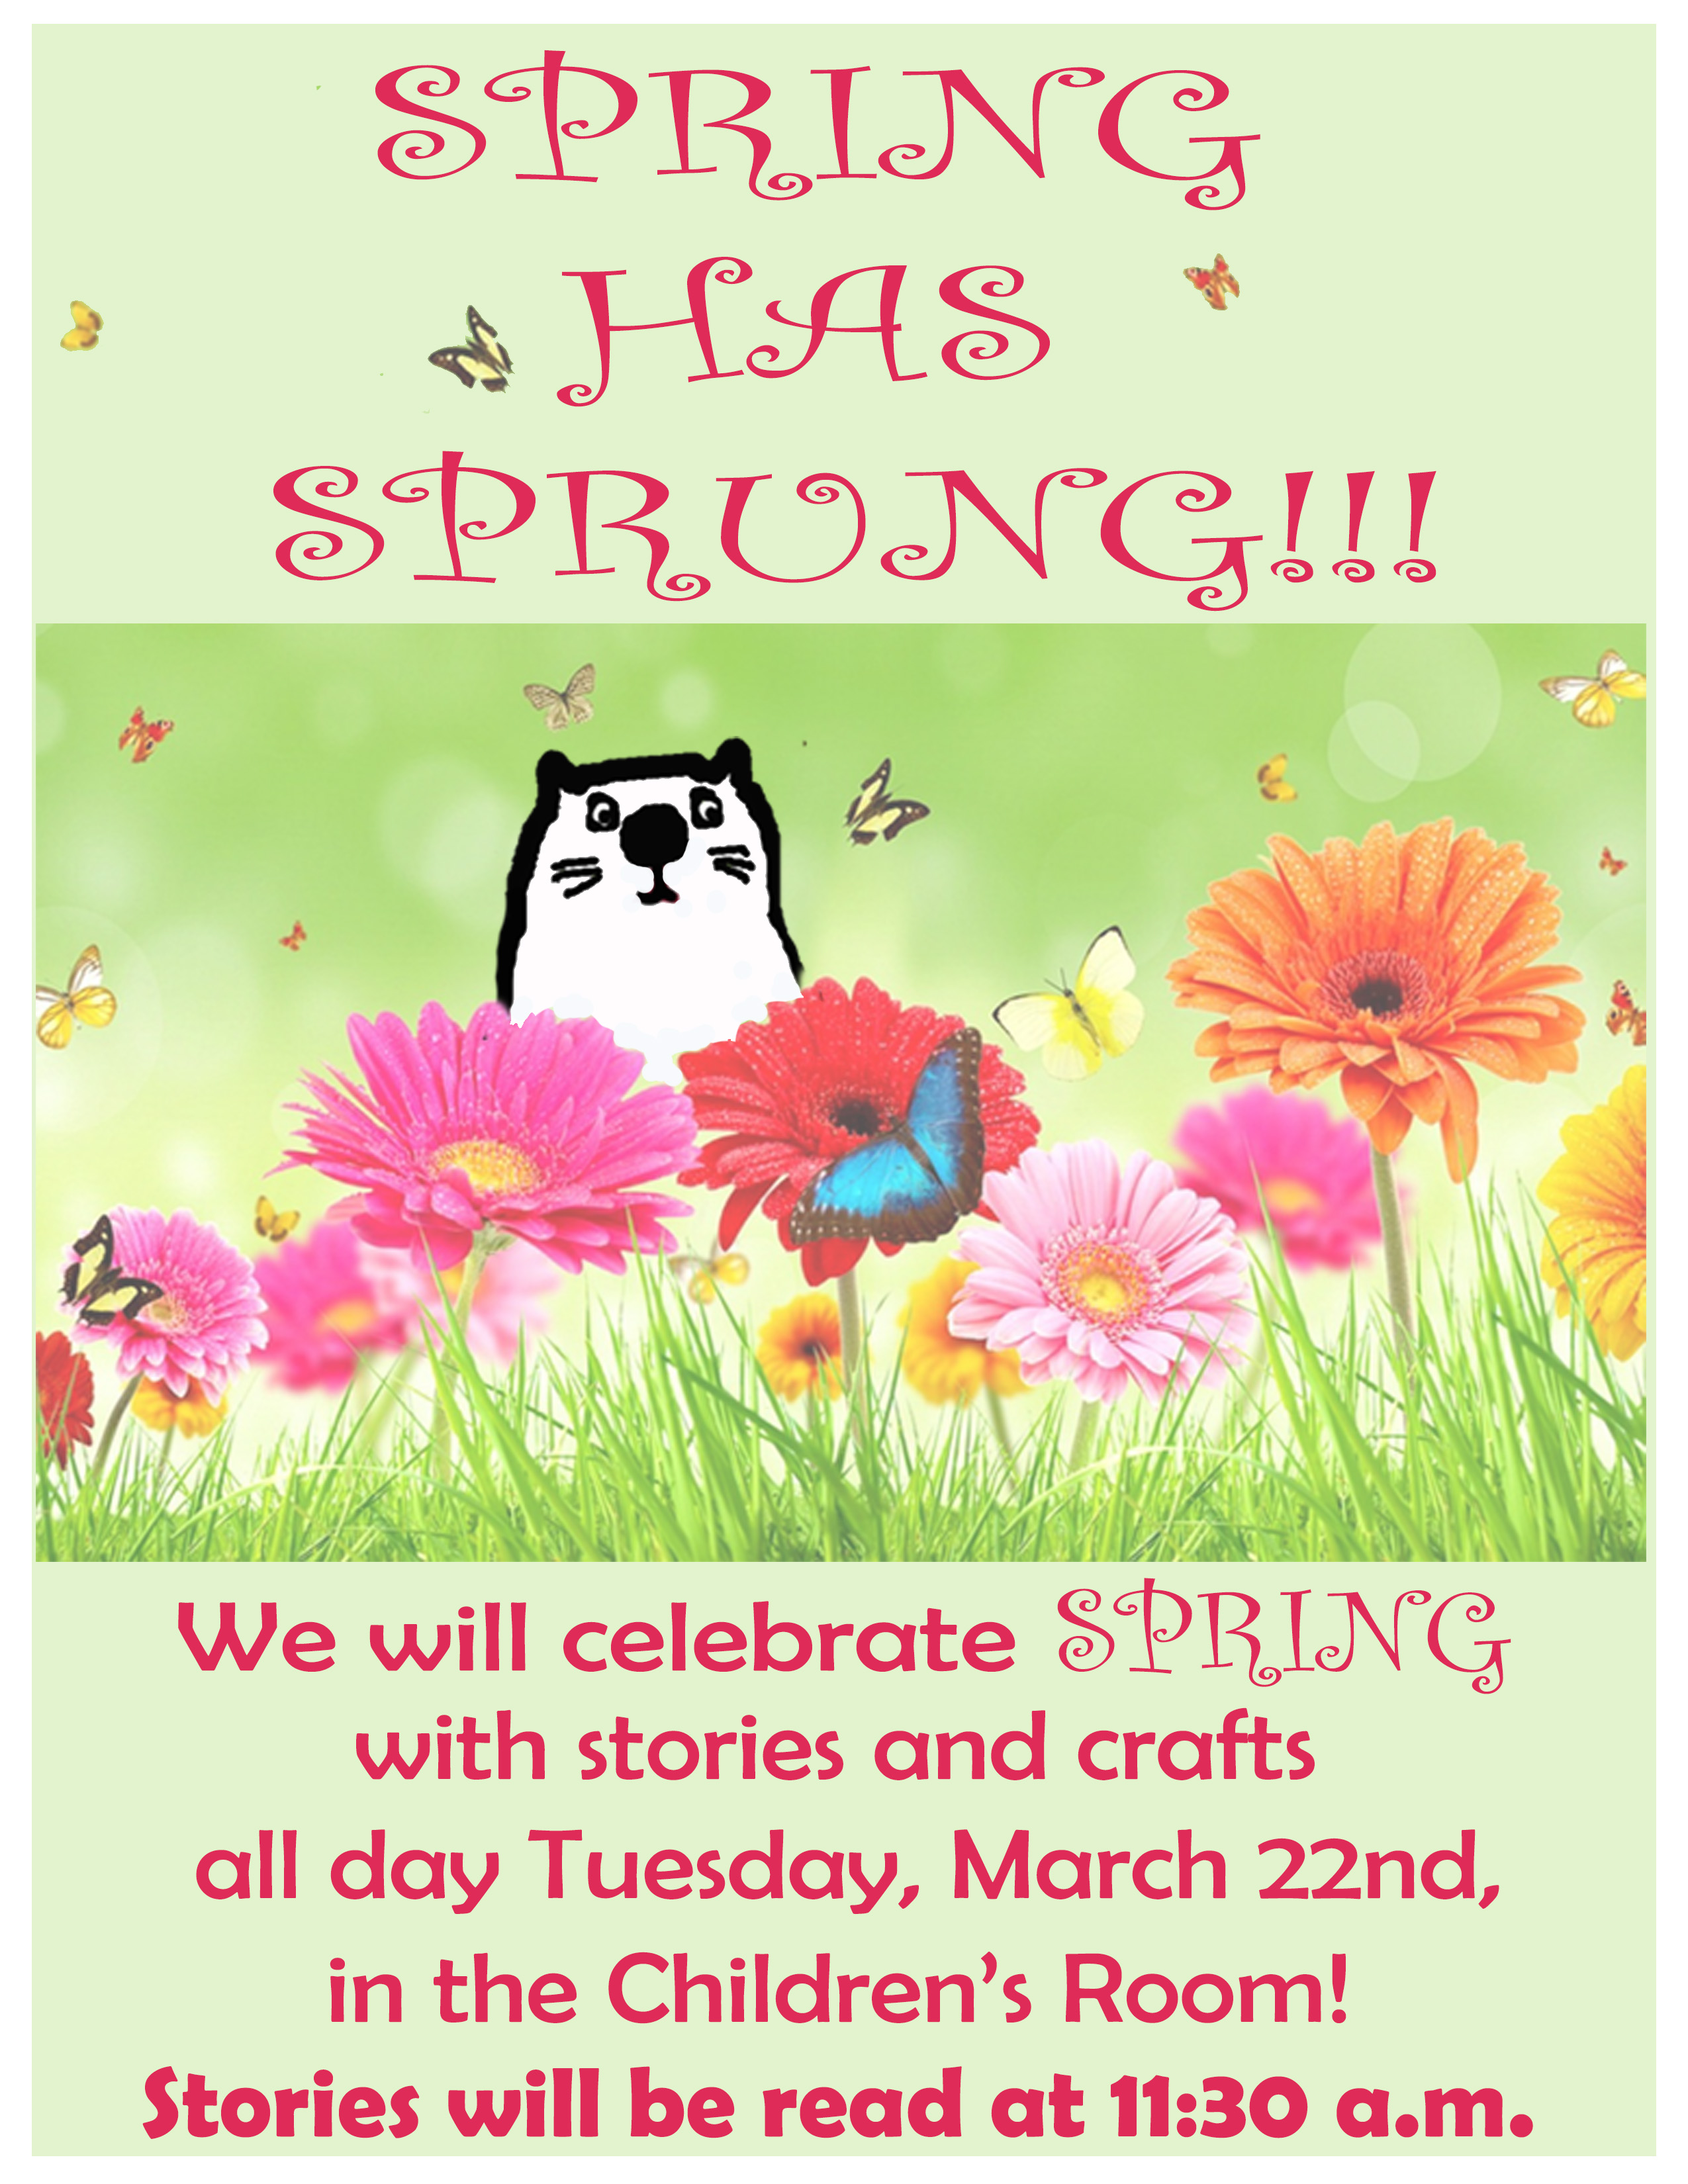 Celebrate Spring in the Children’s Room